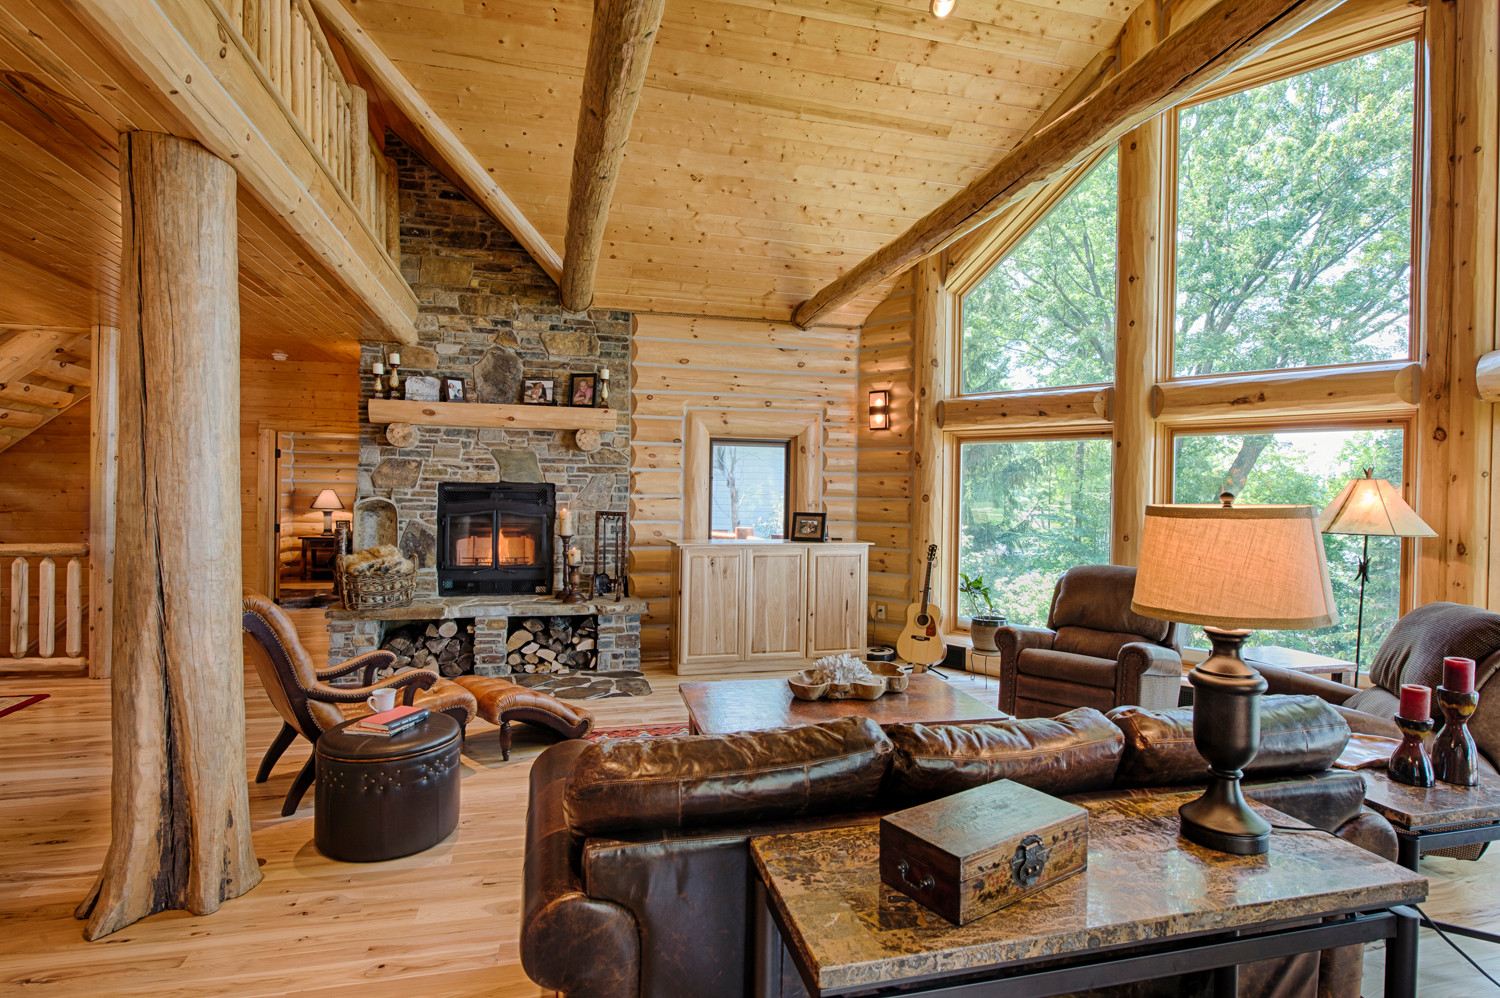 Small & Cozy Log Home Interior Decor Ideas